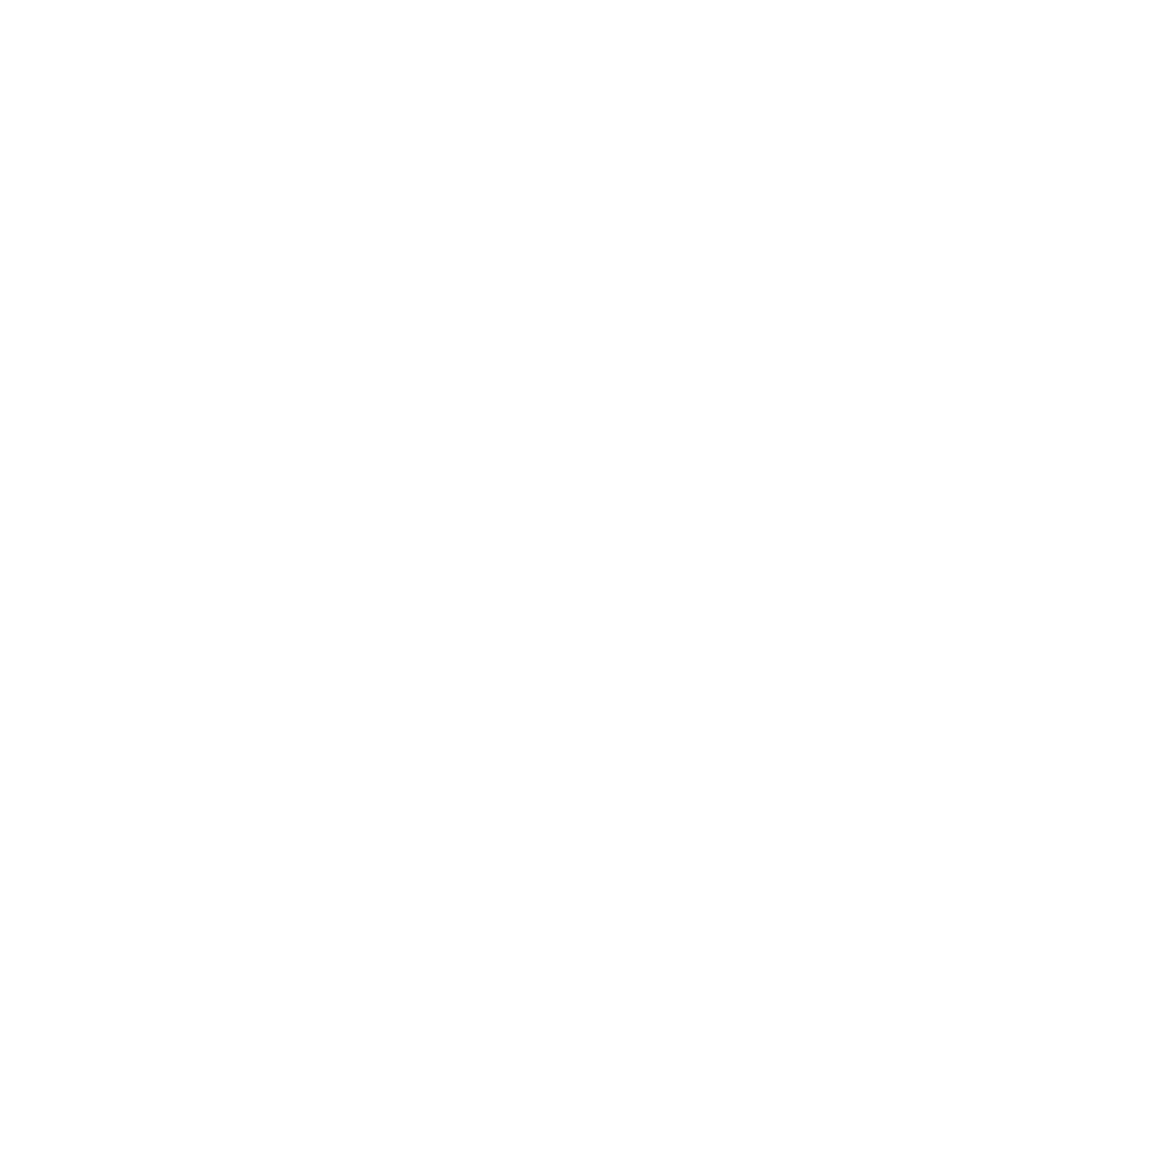 ComplyCube 已通过 ISO 30107-3 Level 2 PAD 认证